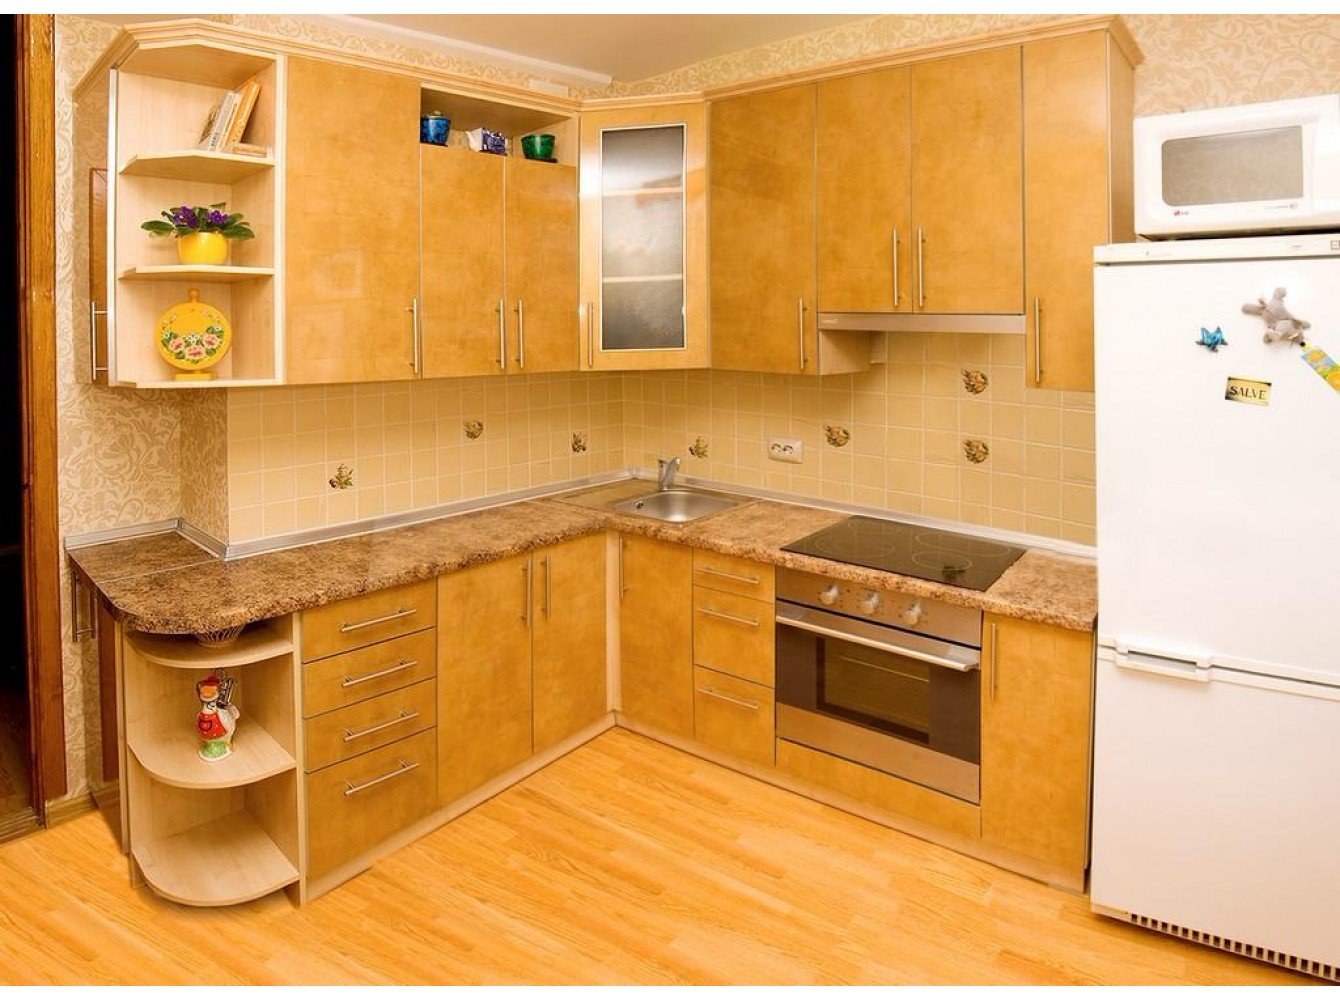 Хорошая простая кухня. Кухня угловая 9кв.м 9 кв.м. Кухонный гарнитур. Кухонный гарнитур угловой. Кухонный гарнитур для маленькой кухни.